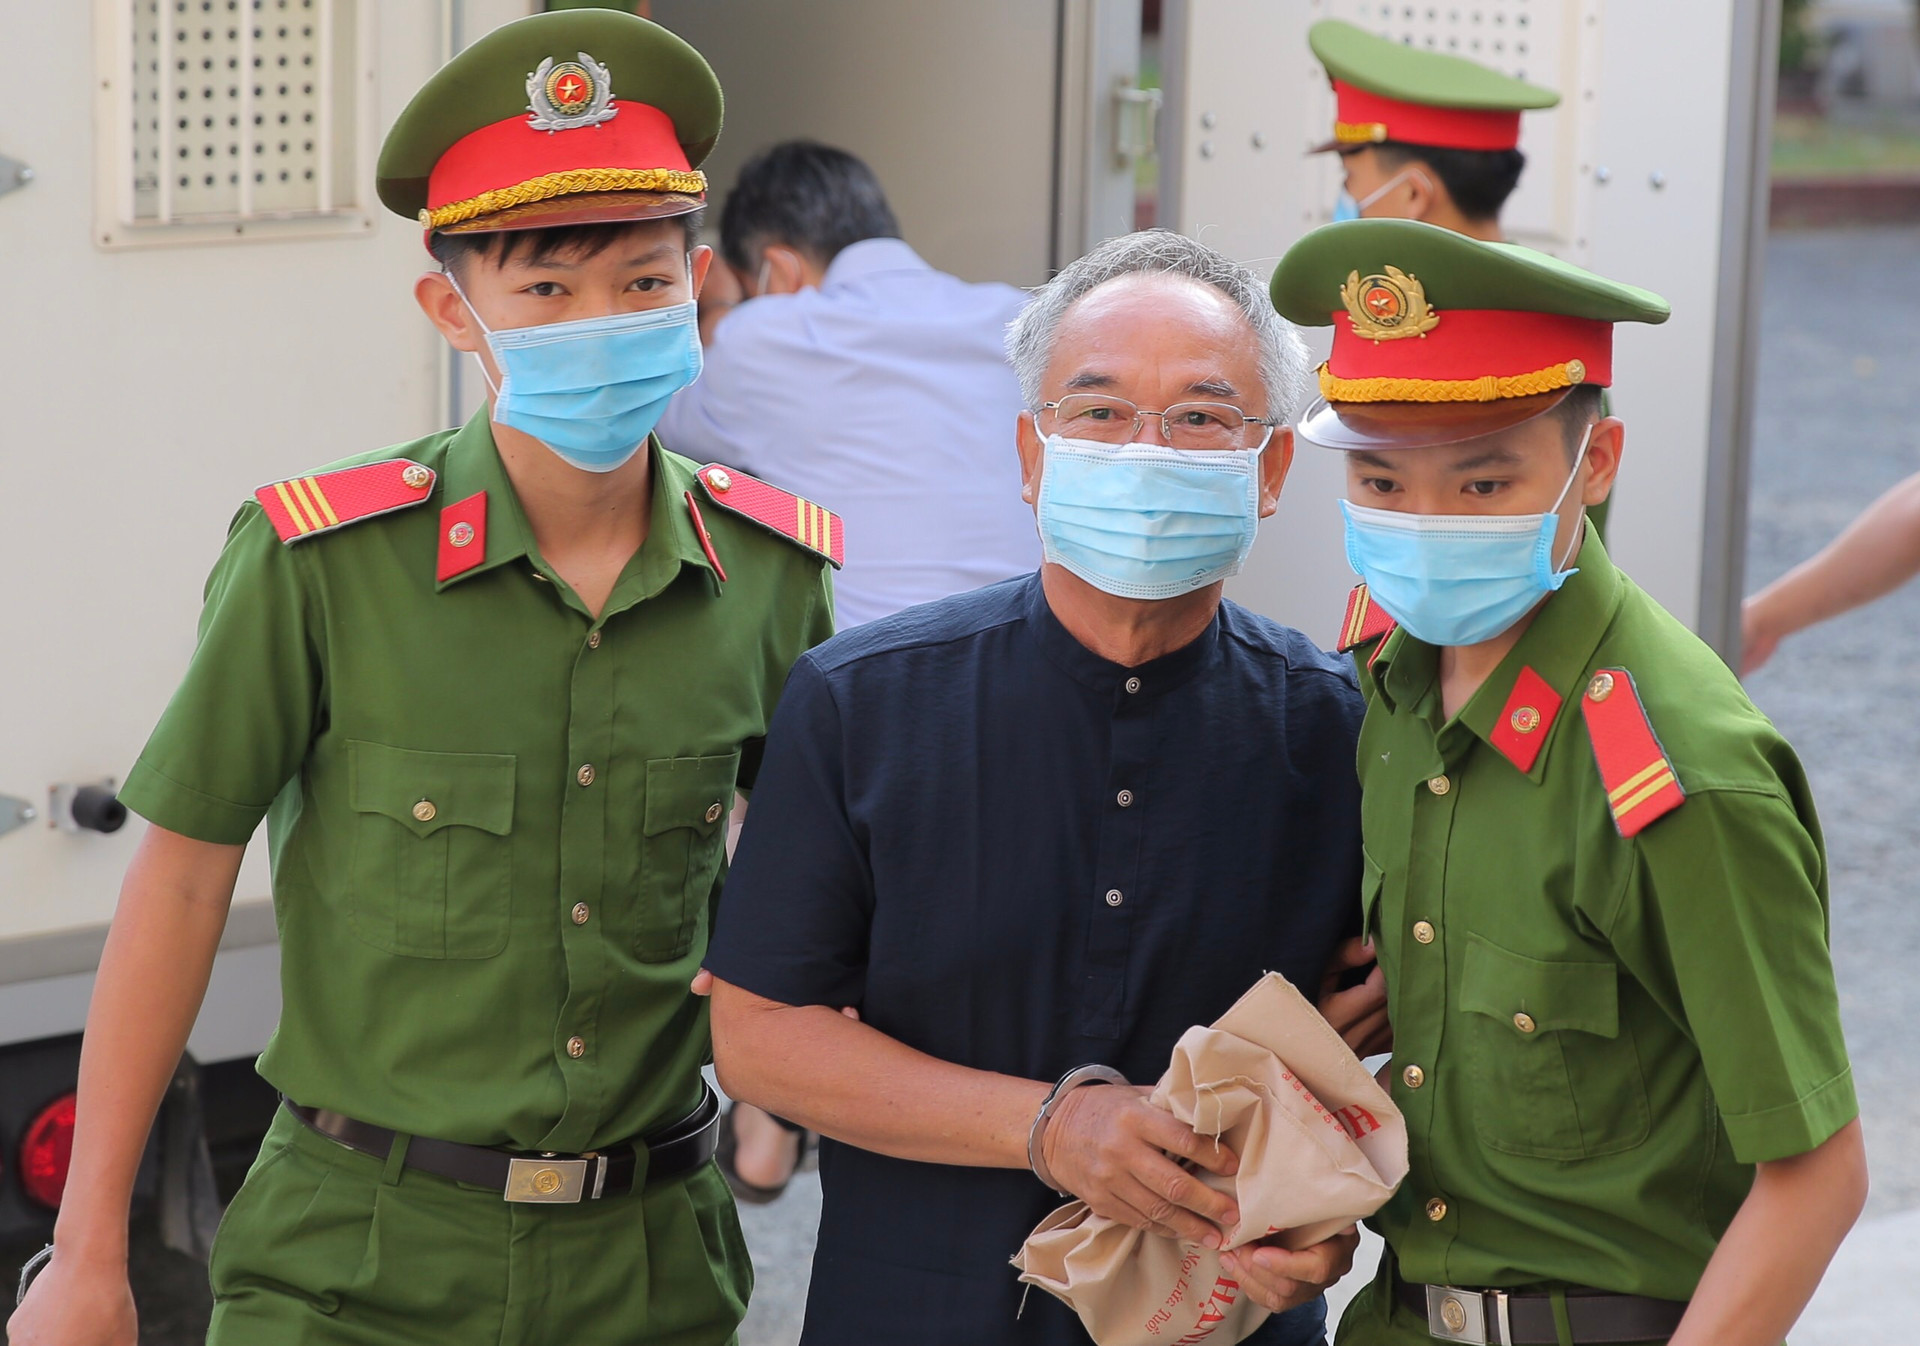 Nguyên Phó Chủ tịch UBND TP HCM Nguyễn Thành Tài được dẫn giải tới tòa.